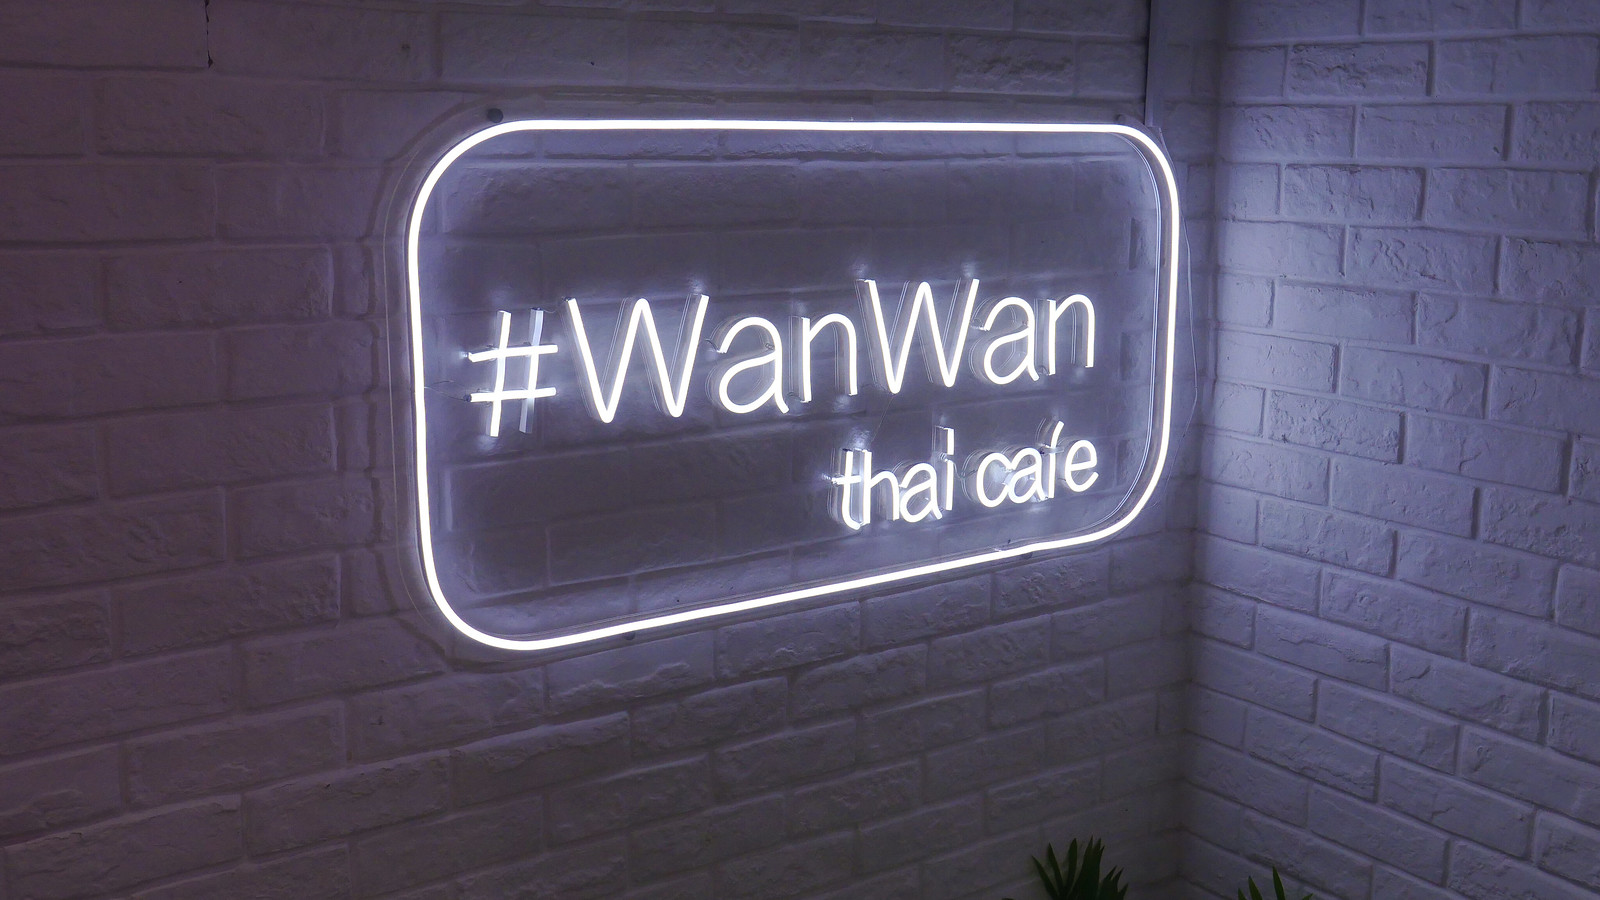 12am - wan wan logo